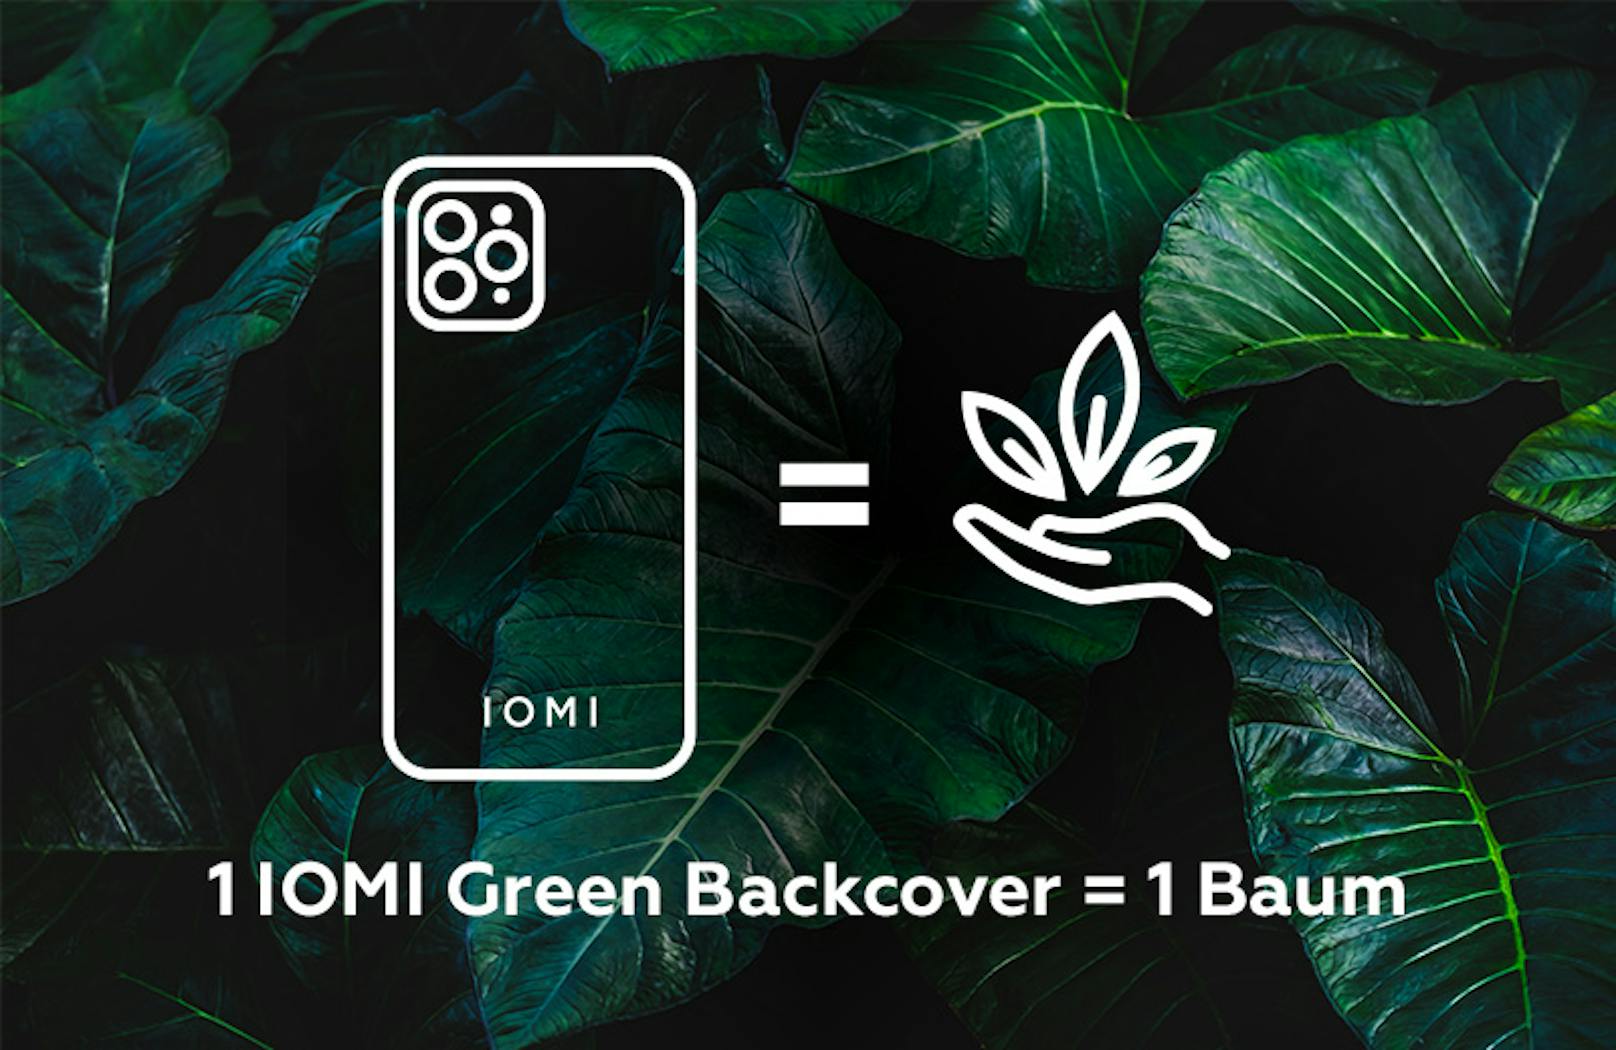 Ein IOMI-Green-Backcover bedeutet einen gepflanzten Baum.